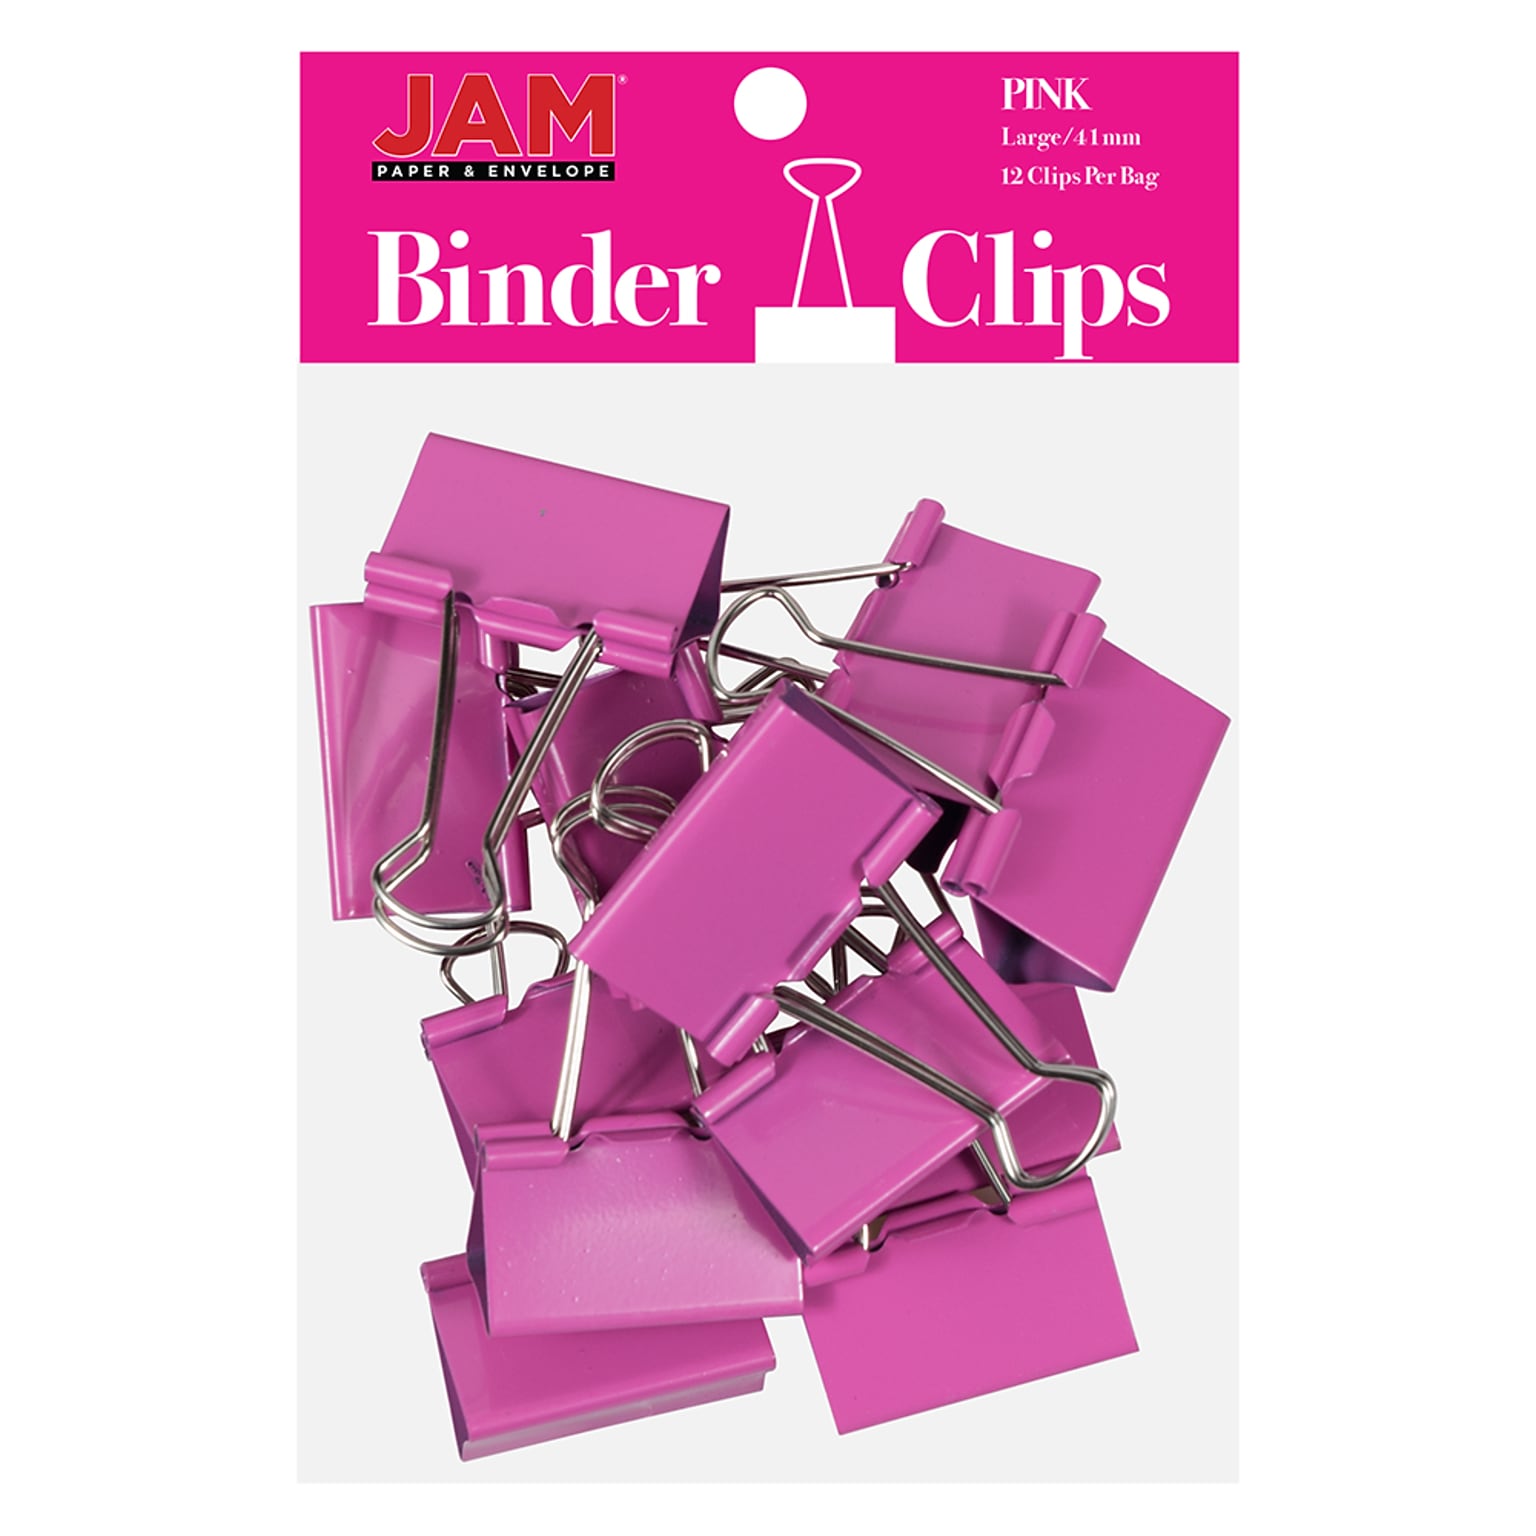 JAM Paper® Binder Clips, Large, 41mm, Pink Binderclips, 12/pack (340BCpi)